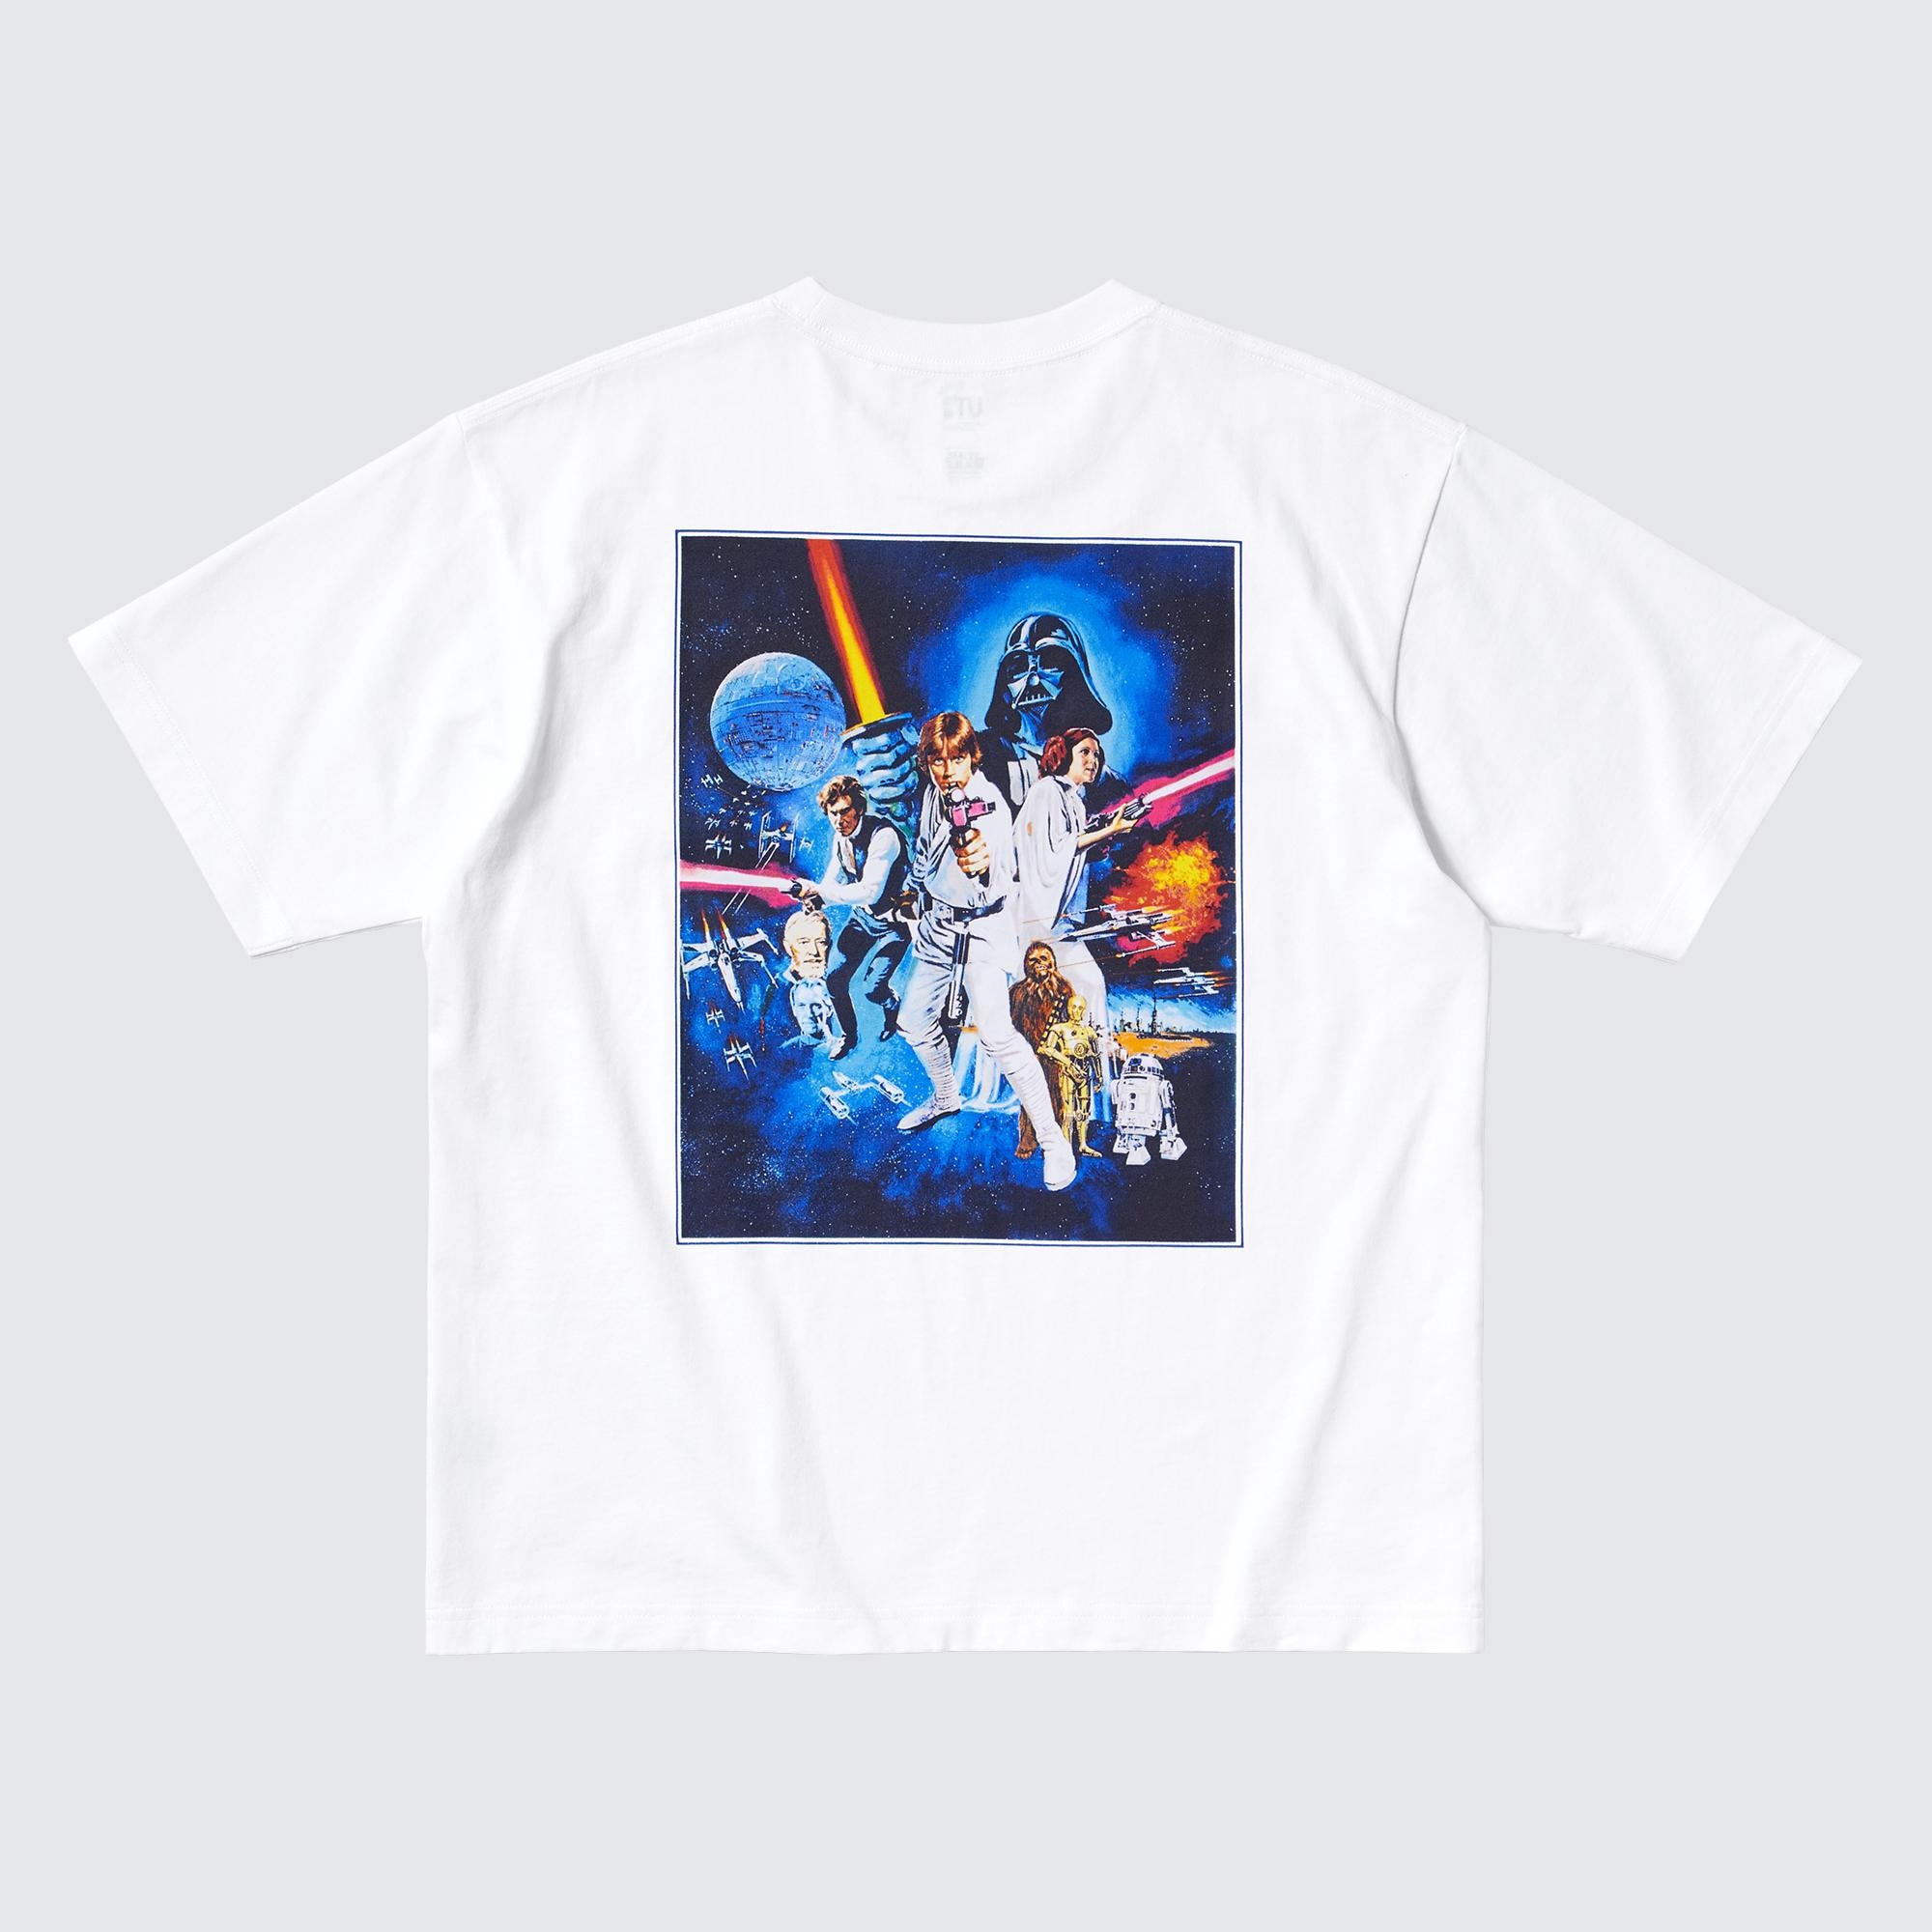 Star Wars: Remastered by Kosuke Kawamura UT (Short-Sleeve Graphic T-Shirt)